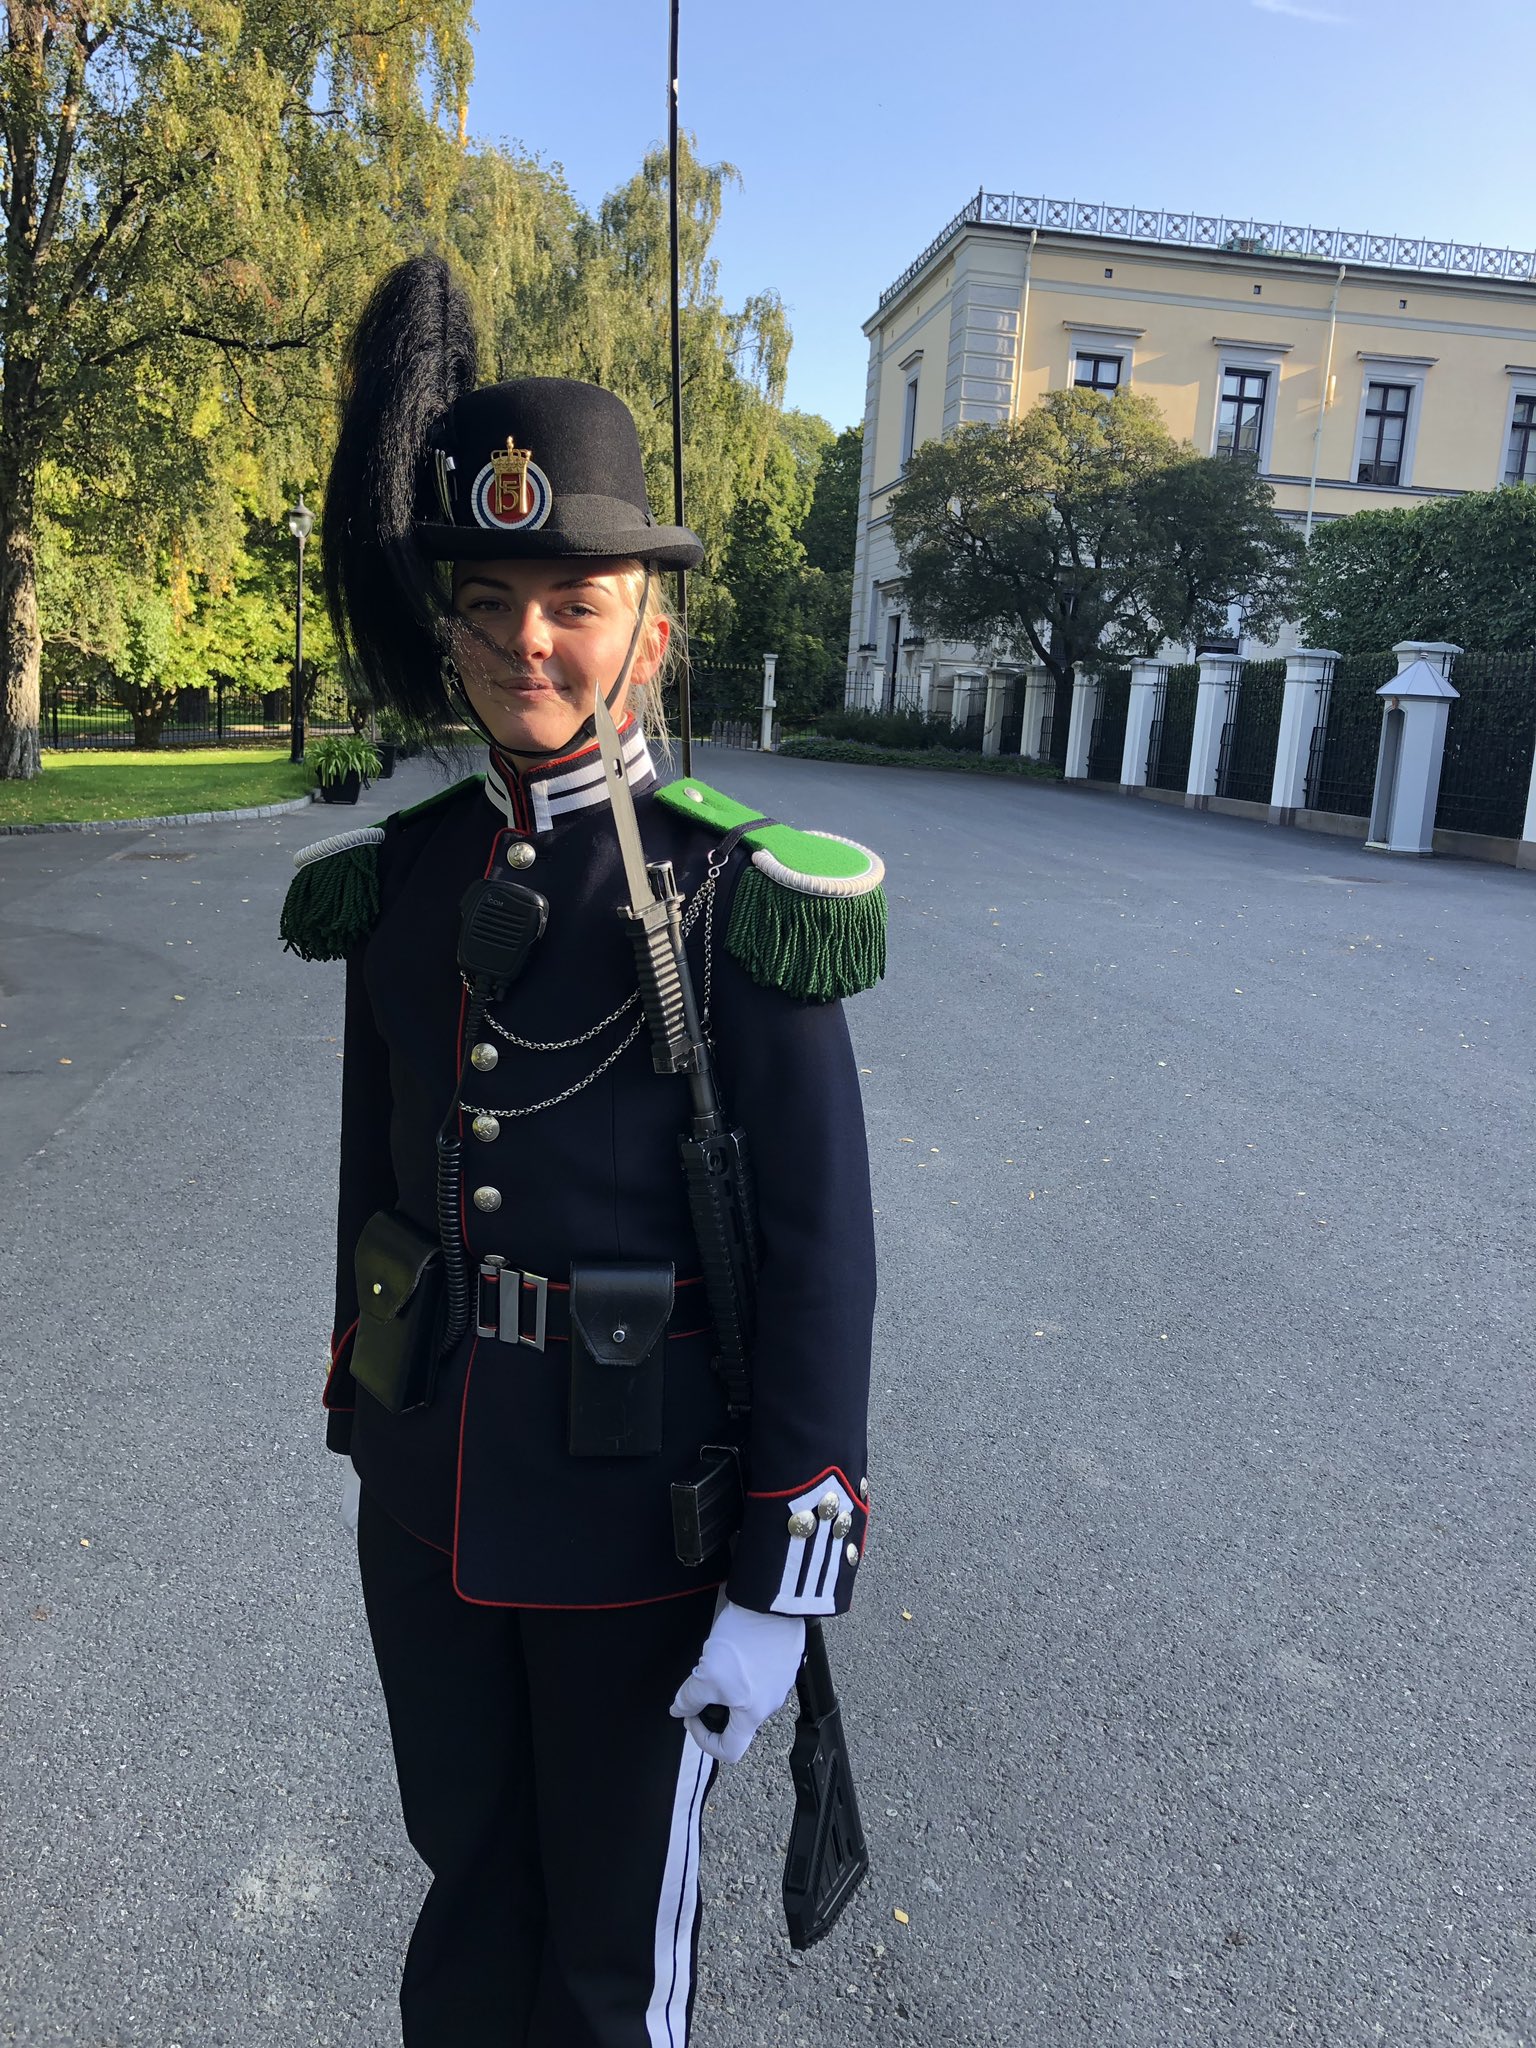 Vice evaluerbare marts Martin Kiil on X: "I Norge har man kvindelige garder. Hende her har lige  smidt mig ud af Dronningeparken i Oslo, fordi der skulle være et  arrangement #ligestilling https://t.co/0kZqHDWBMe" / X